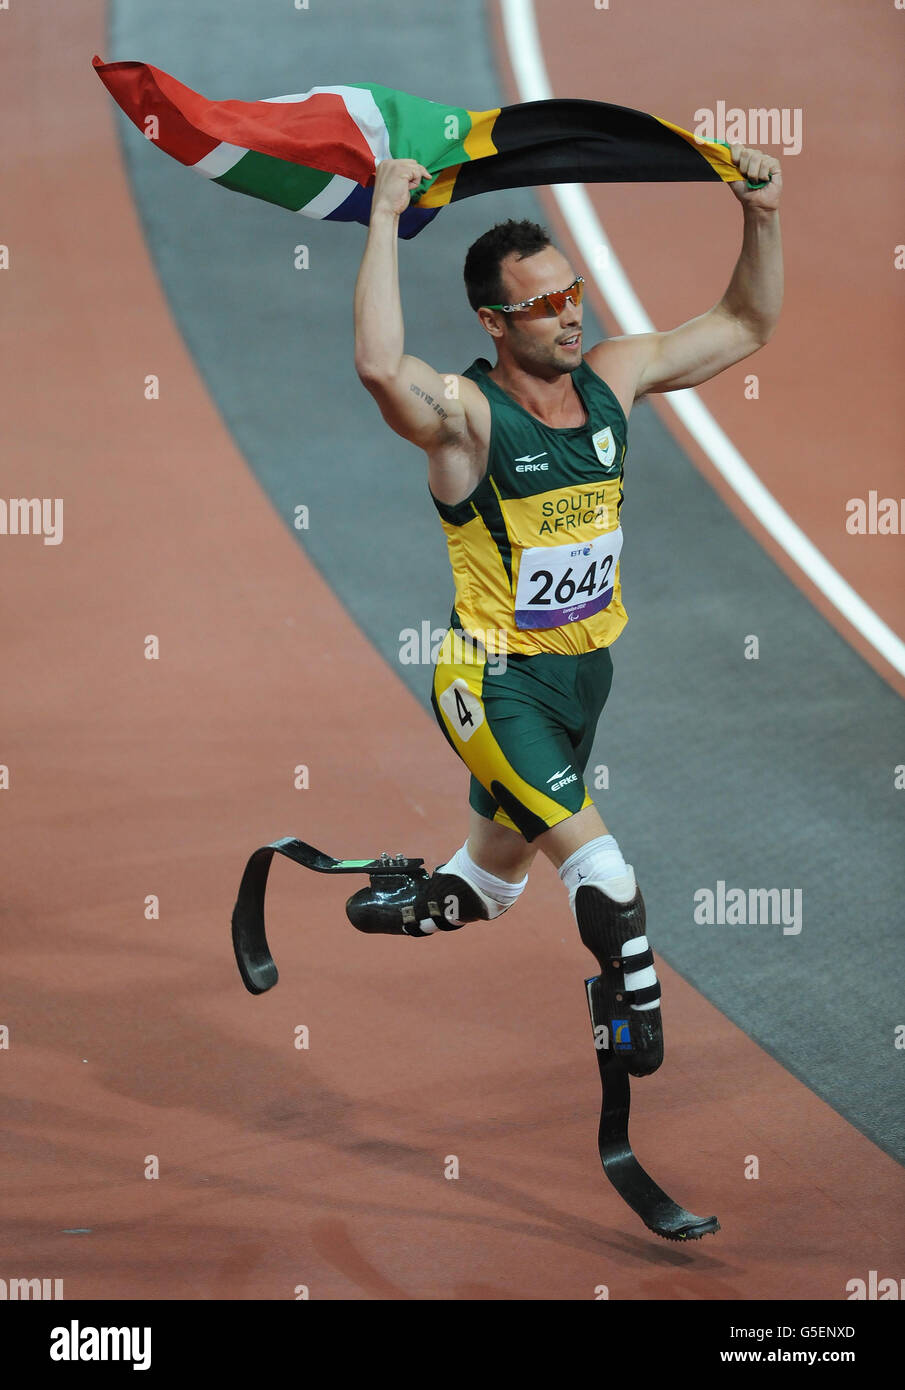 Oscar Pistorius, en Afrique du Sud, célèbre la victoire de la finale masculine du 400m T44 au stade olympique de Londres. Banque D'Images